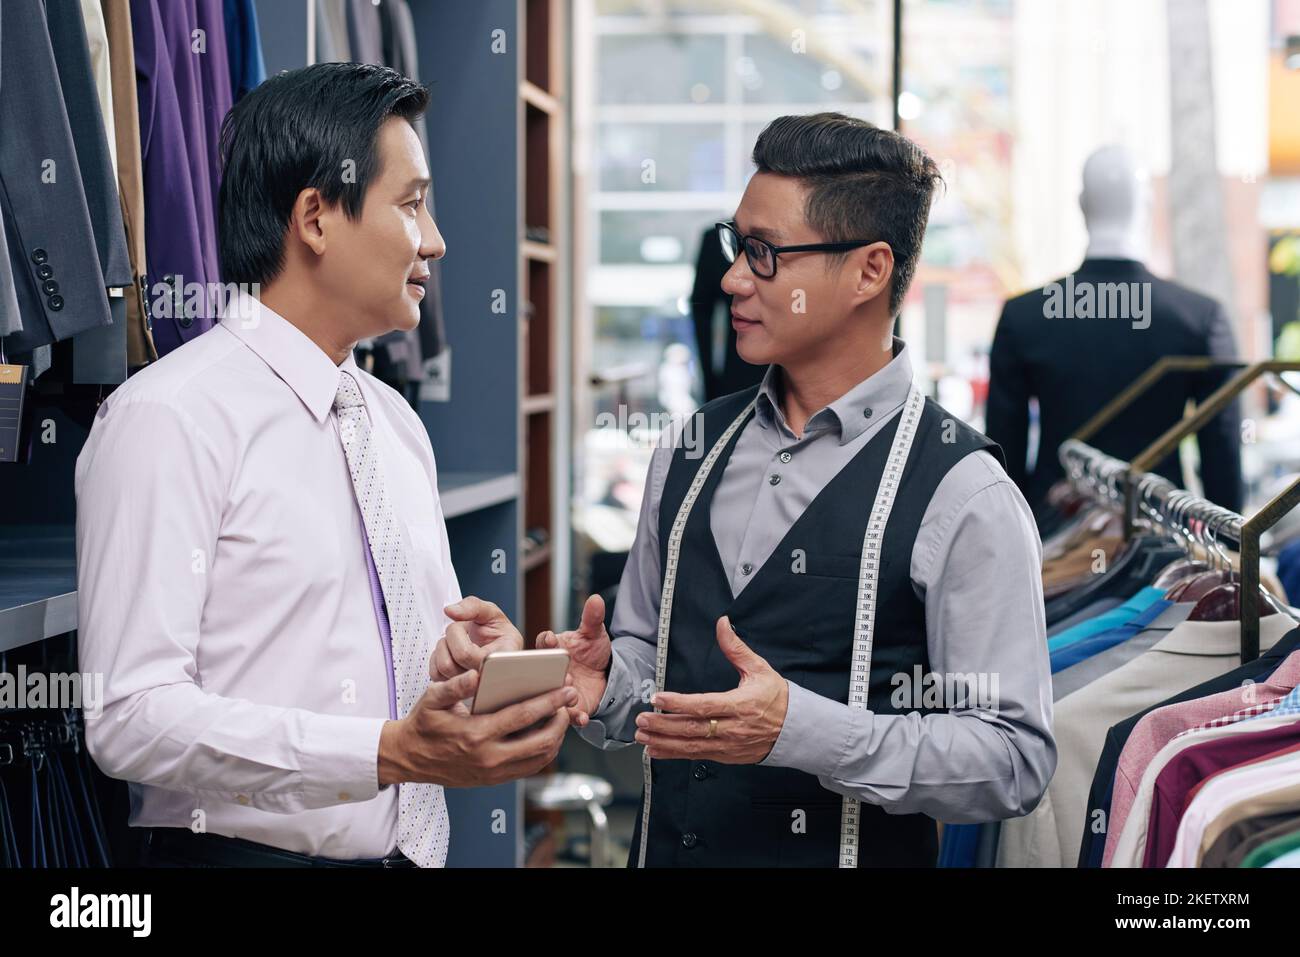 Un assistant d'atelier de vêtements pour hommes et un client discutent Banque D'Images